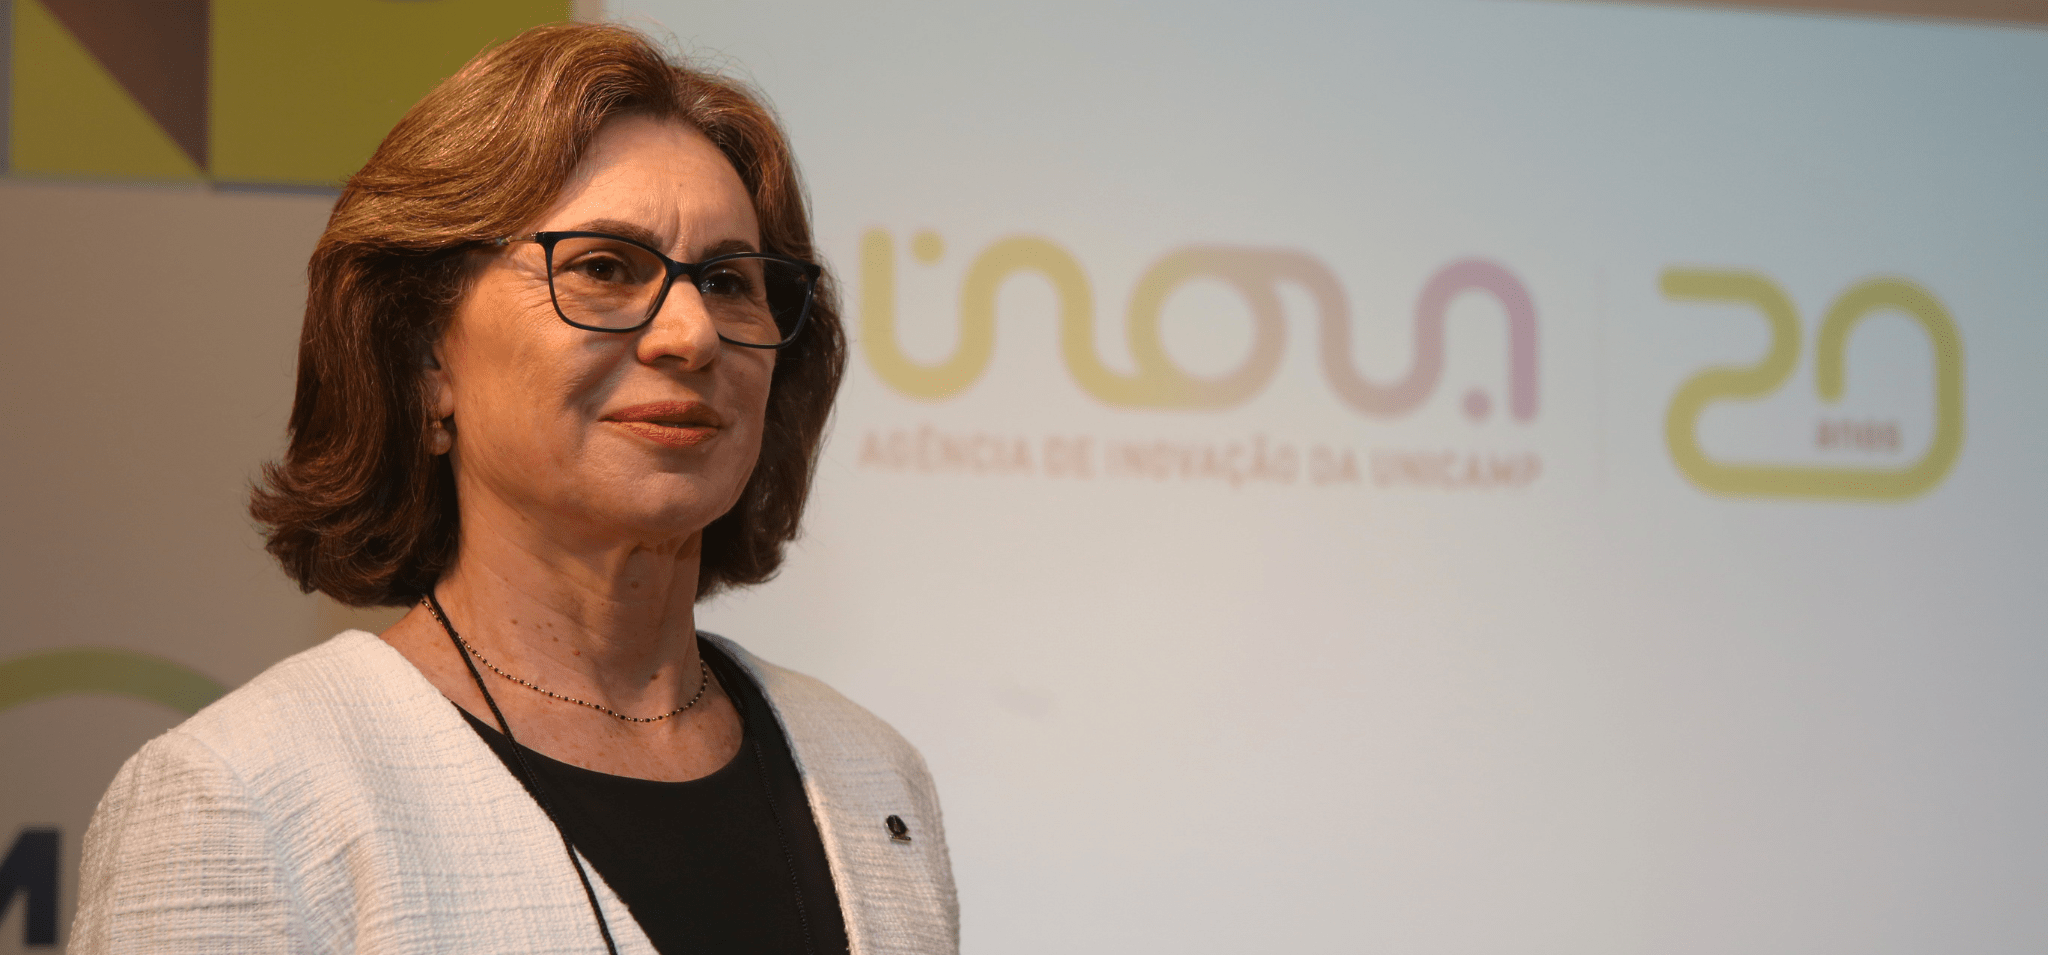 Na foto está a professora Ana Frattini, uma mulher branca, com cabelos castanhos na altura do pescoço usando óculos de grau. A foto é colorida e ela está a frente de um banner com a projeção do logotipo da Inova Unicamp. Fim da descrição.